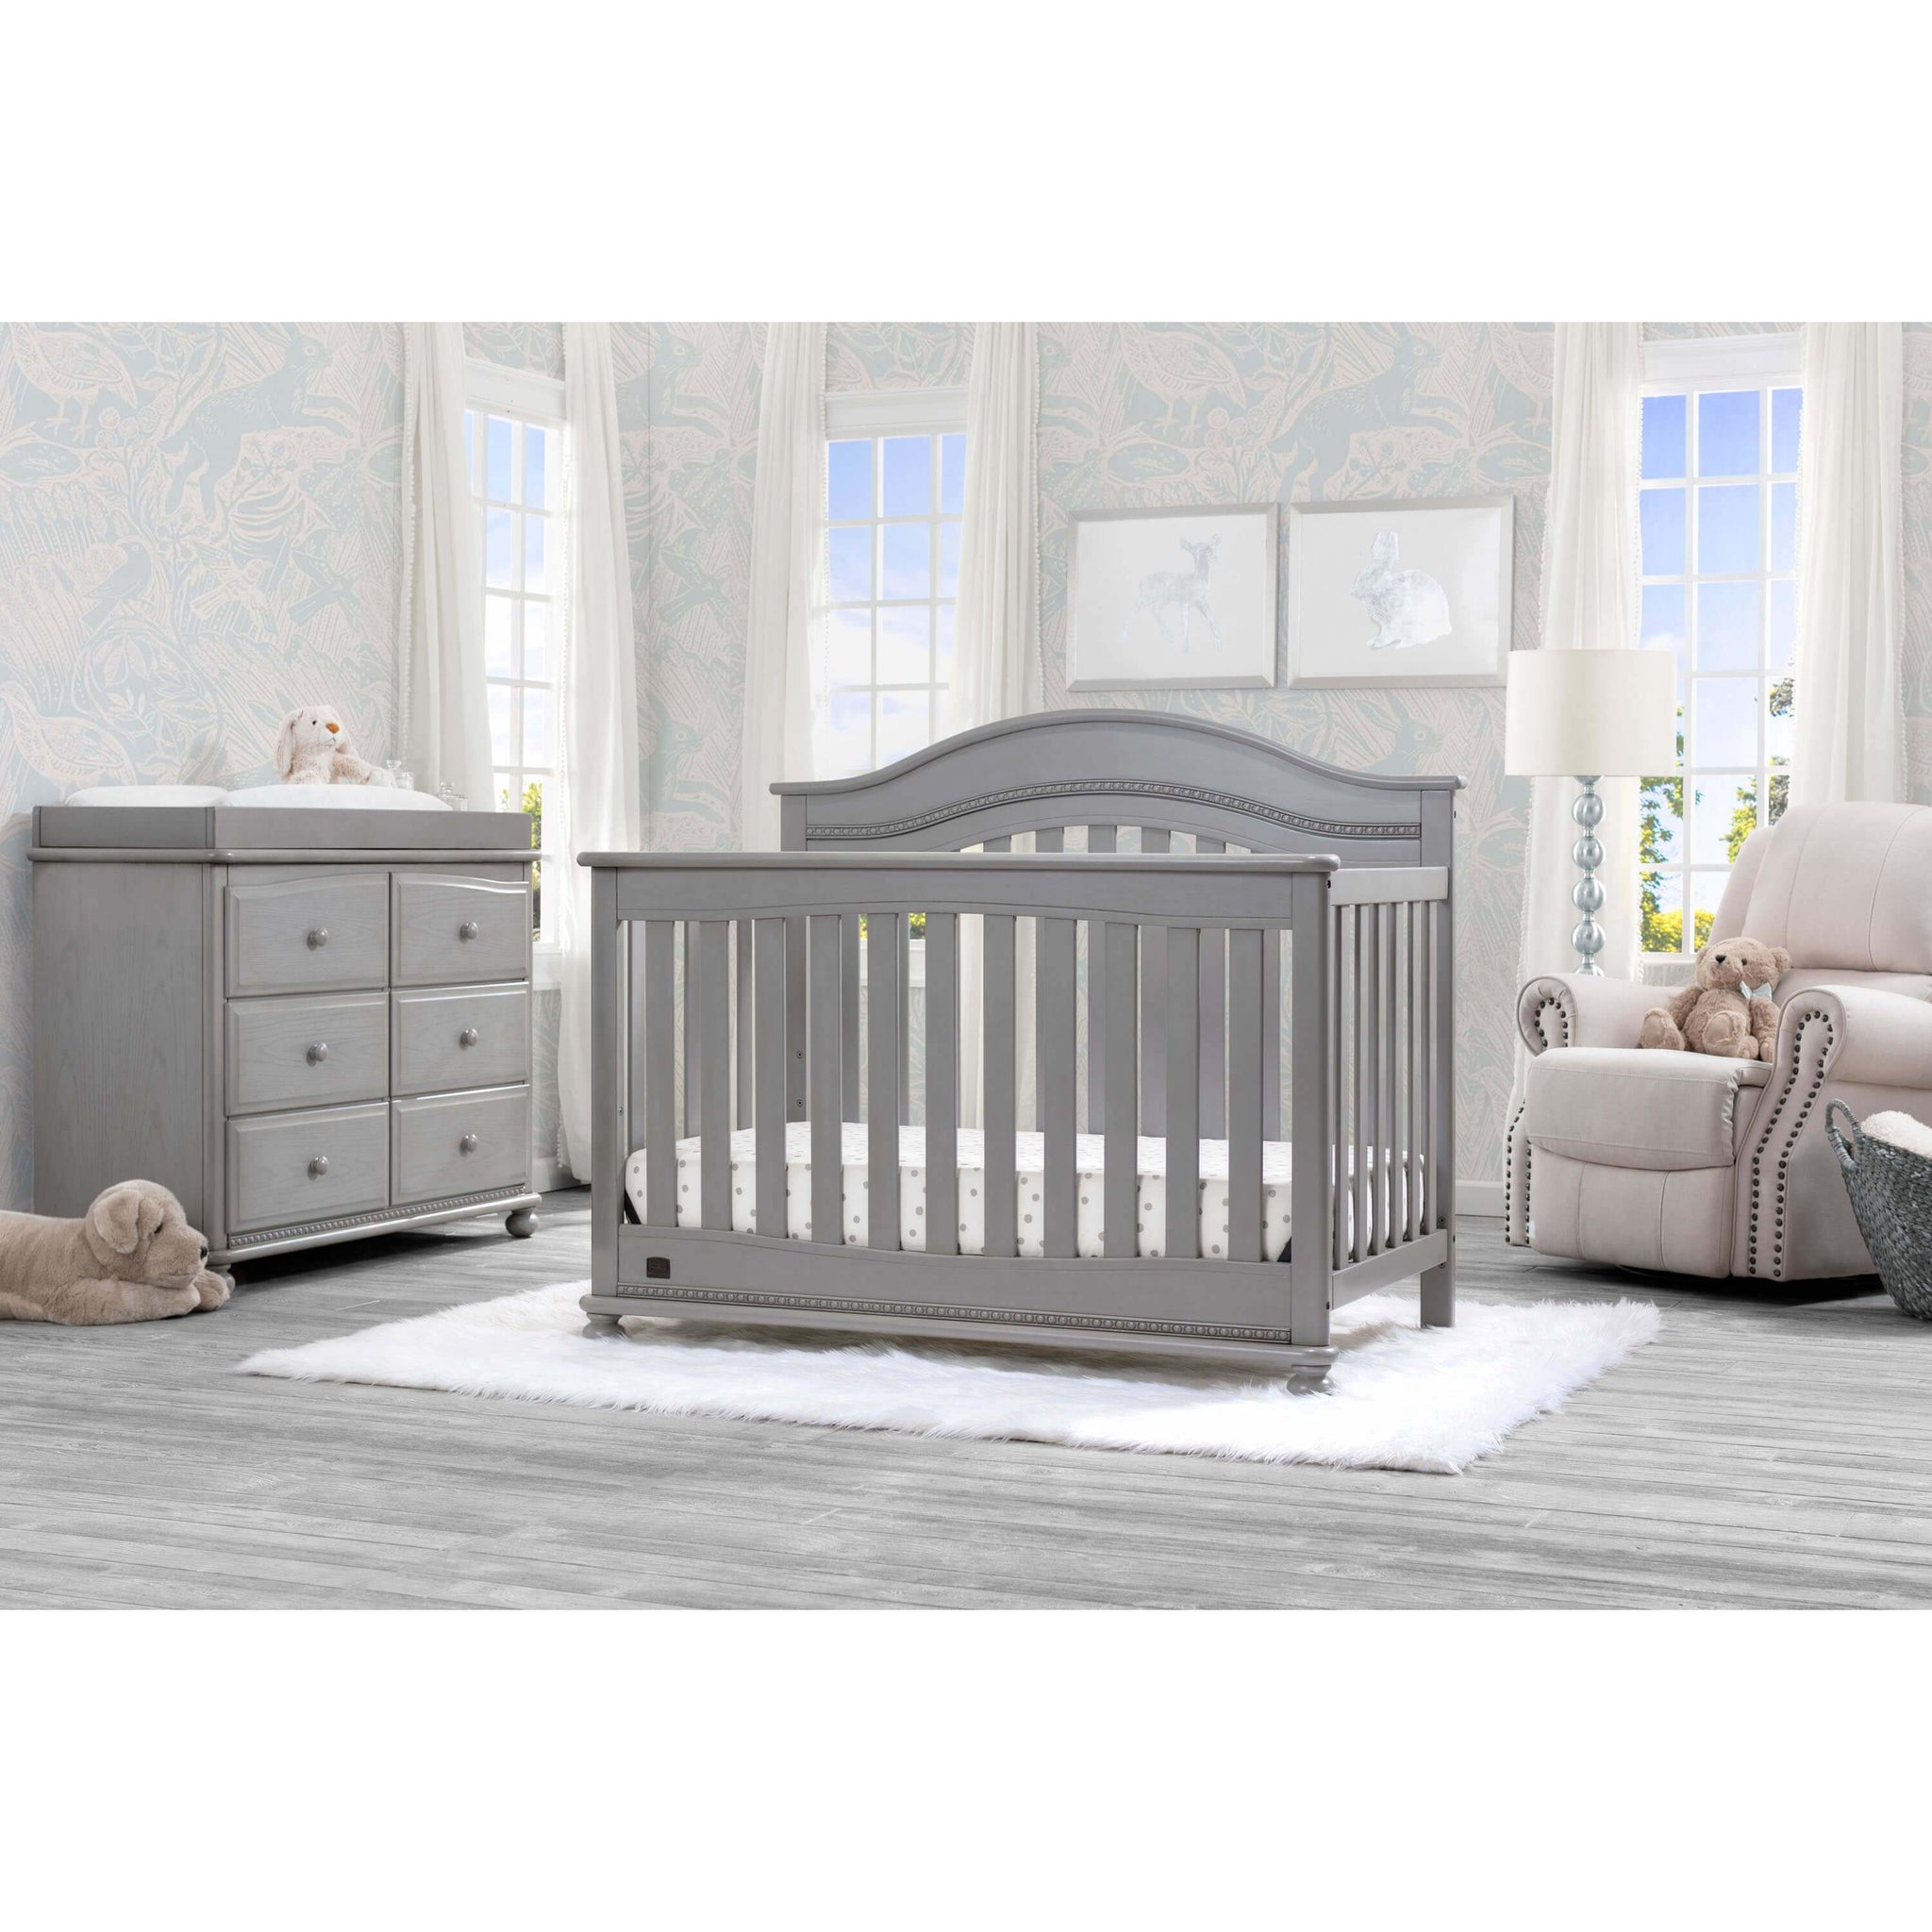 simmons nursery furniture sets